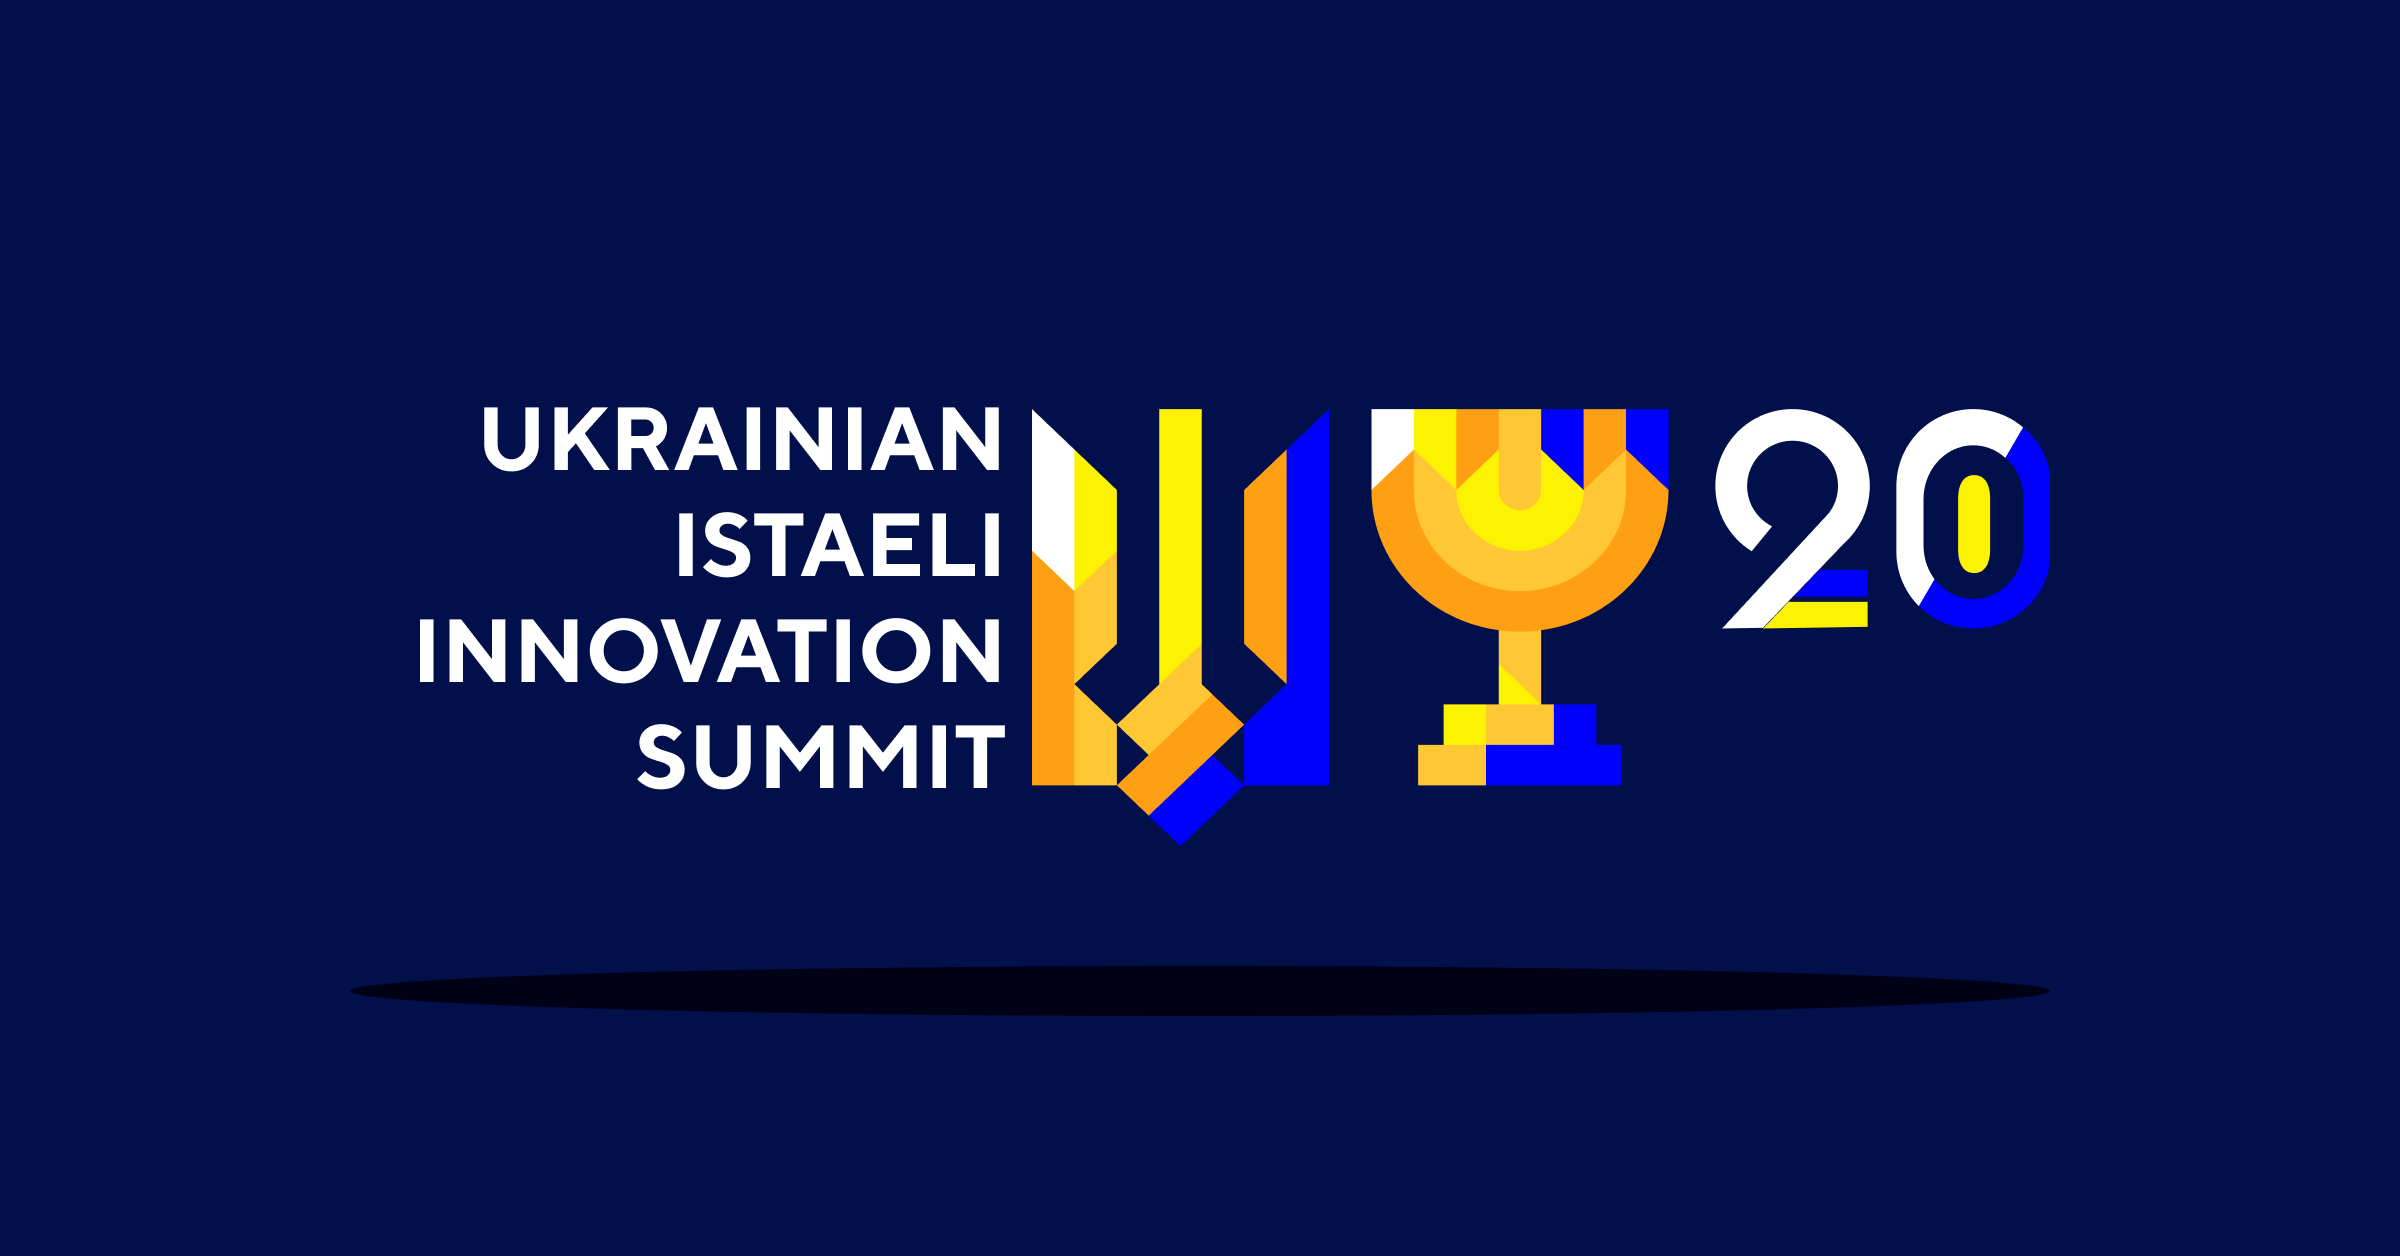 PayCore.io takes part in Ukrainian Israeli Innovation Summit 2020